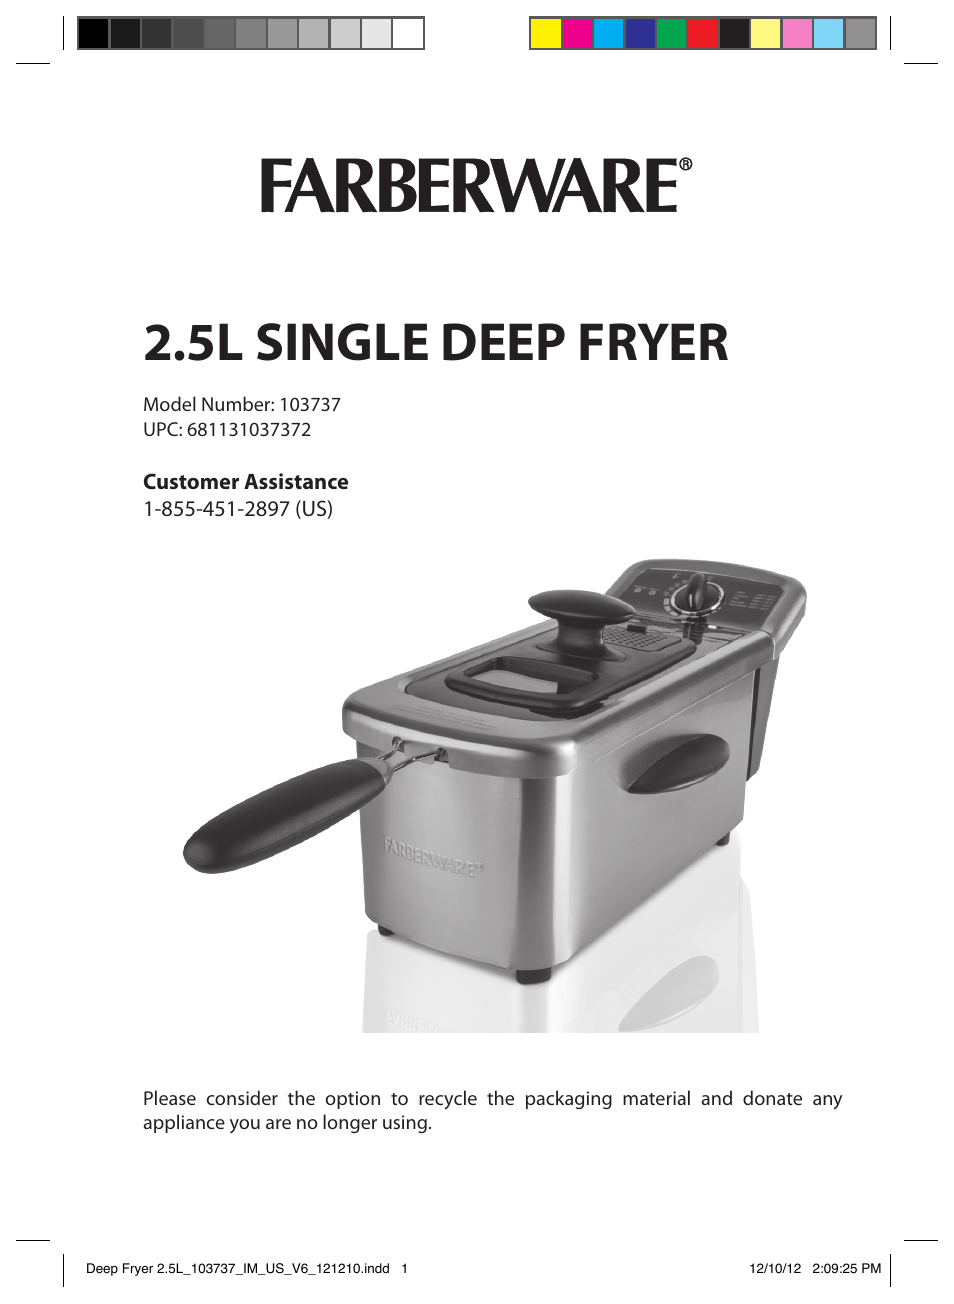 FARBERWARE 103737 2.5L Dual Deep Fryer User Manual | 15 pages